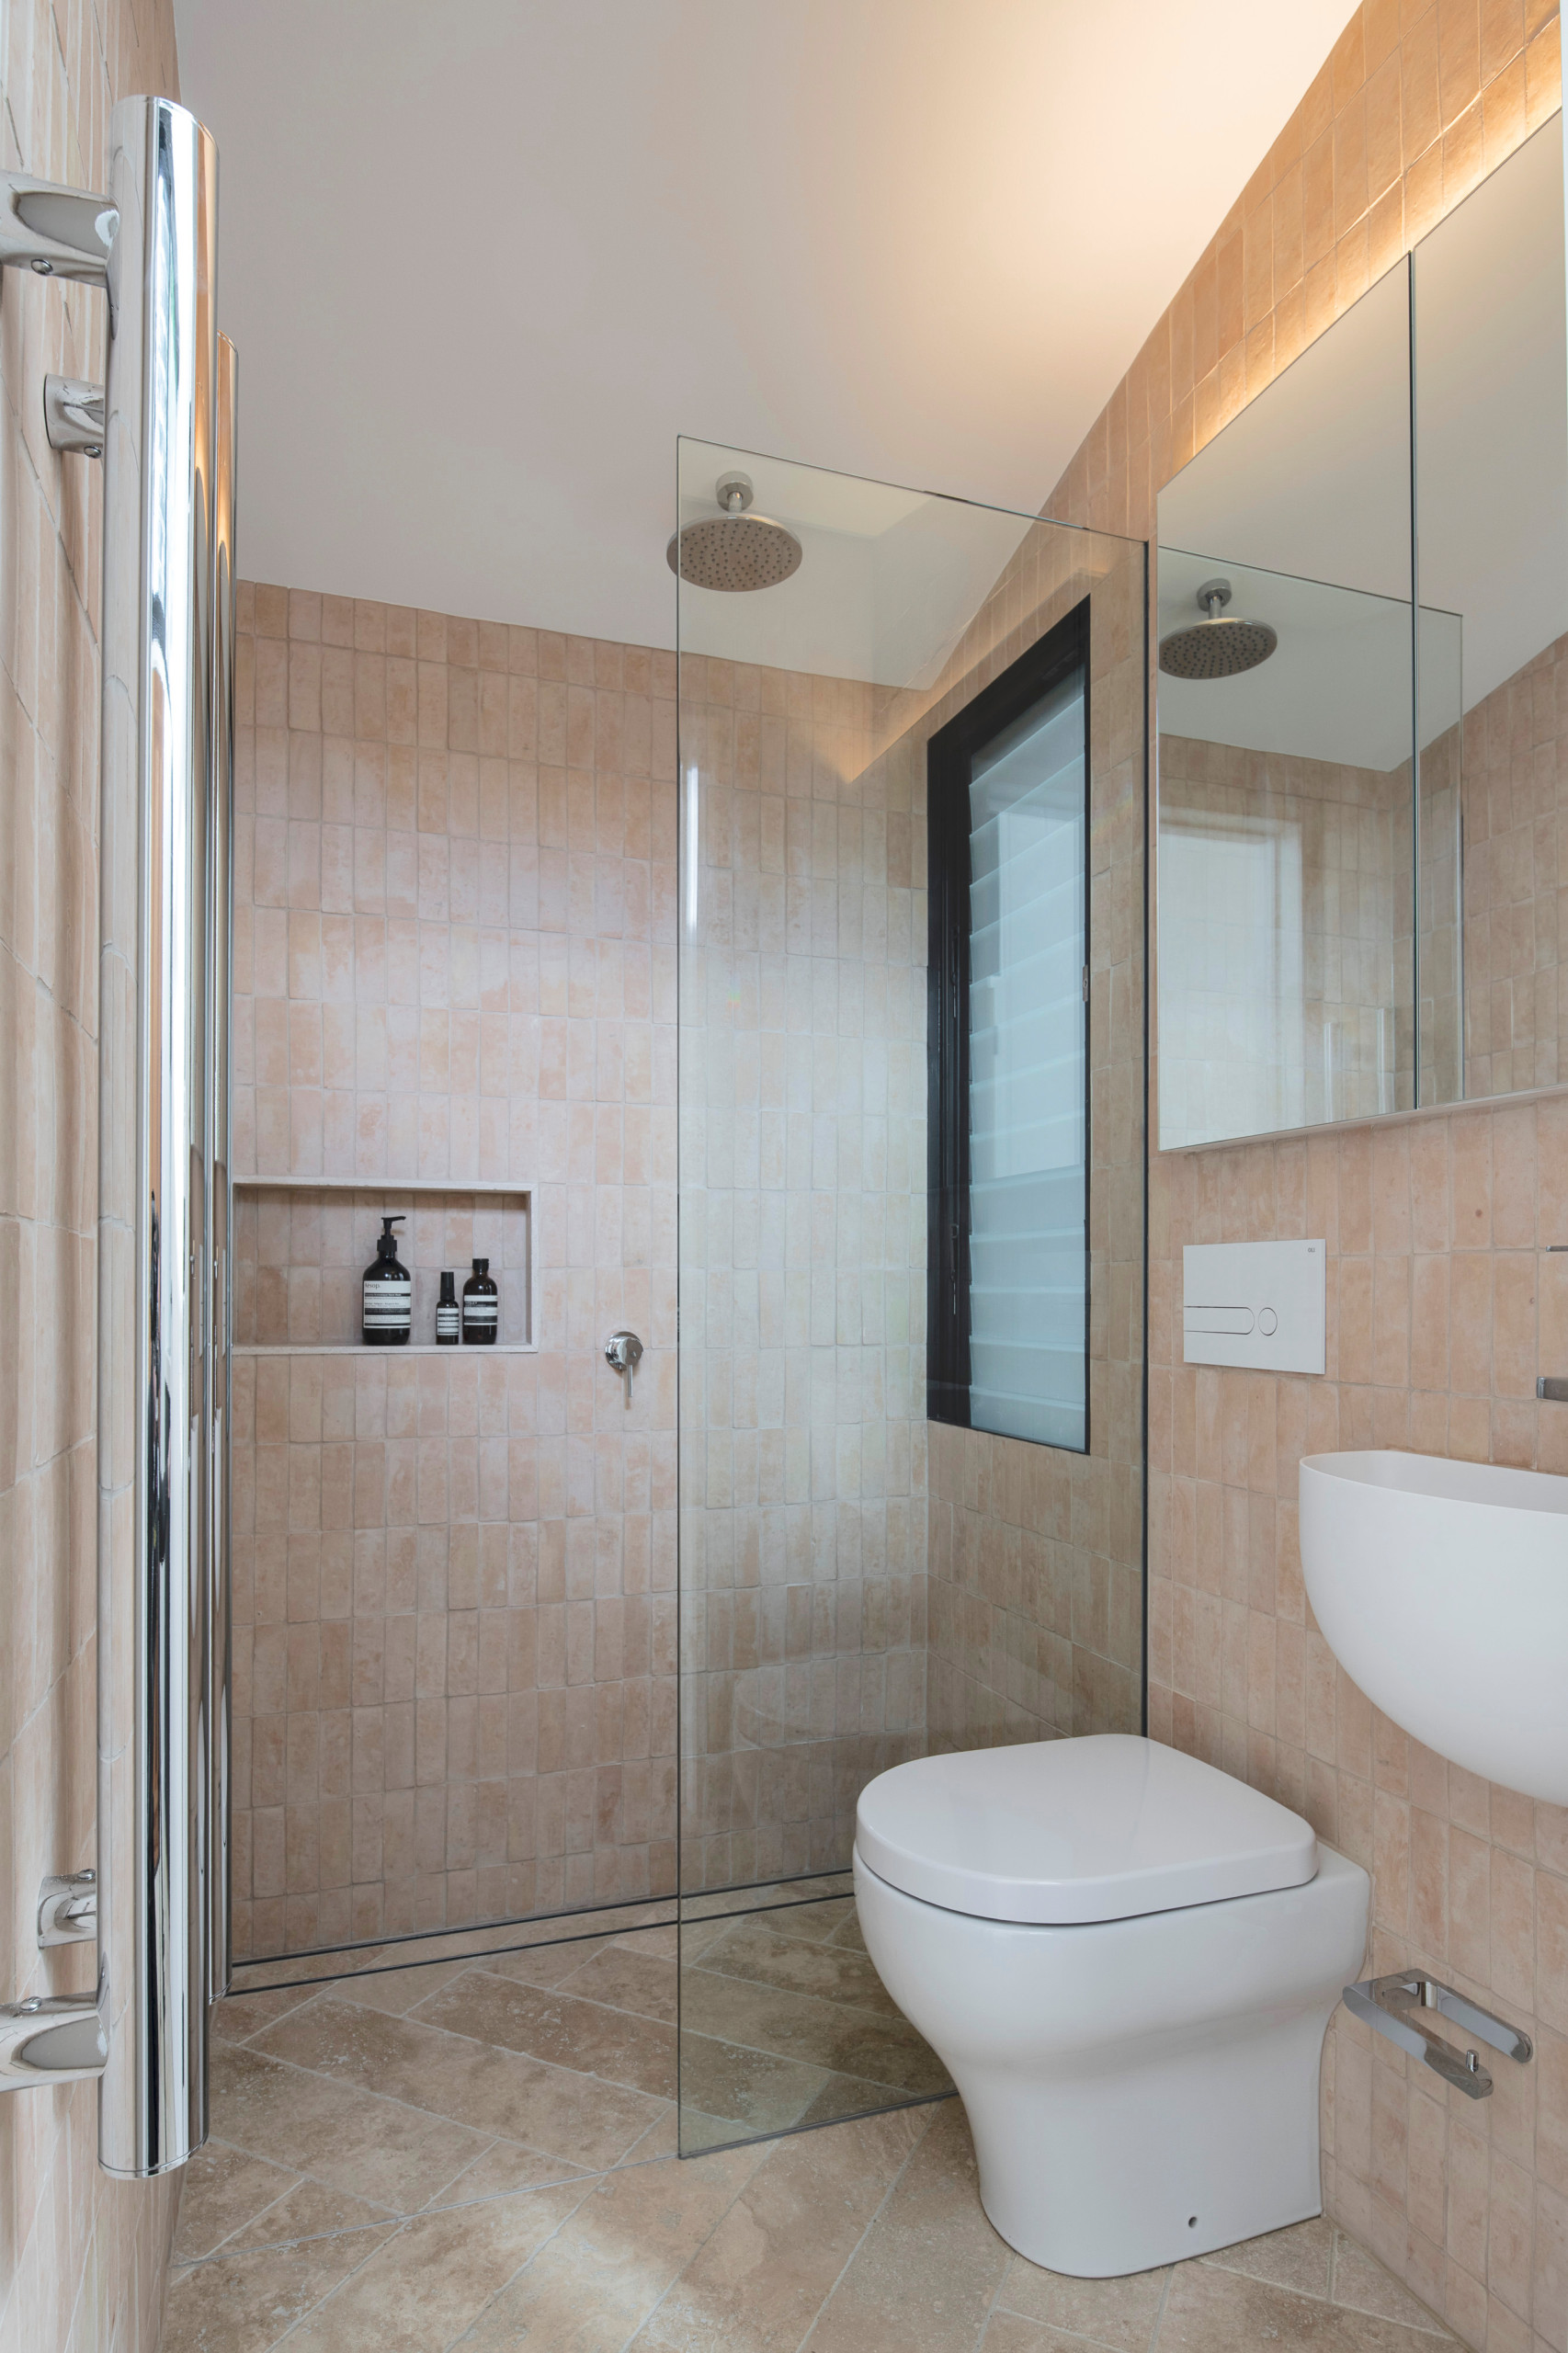 Bathroom Renovation - Simple Way To Increase Home Value